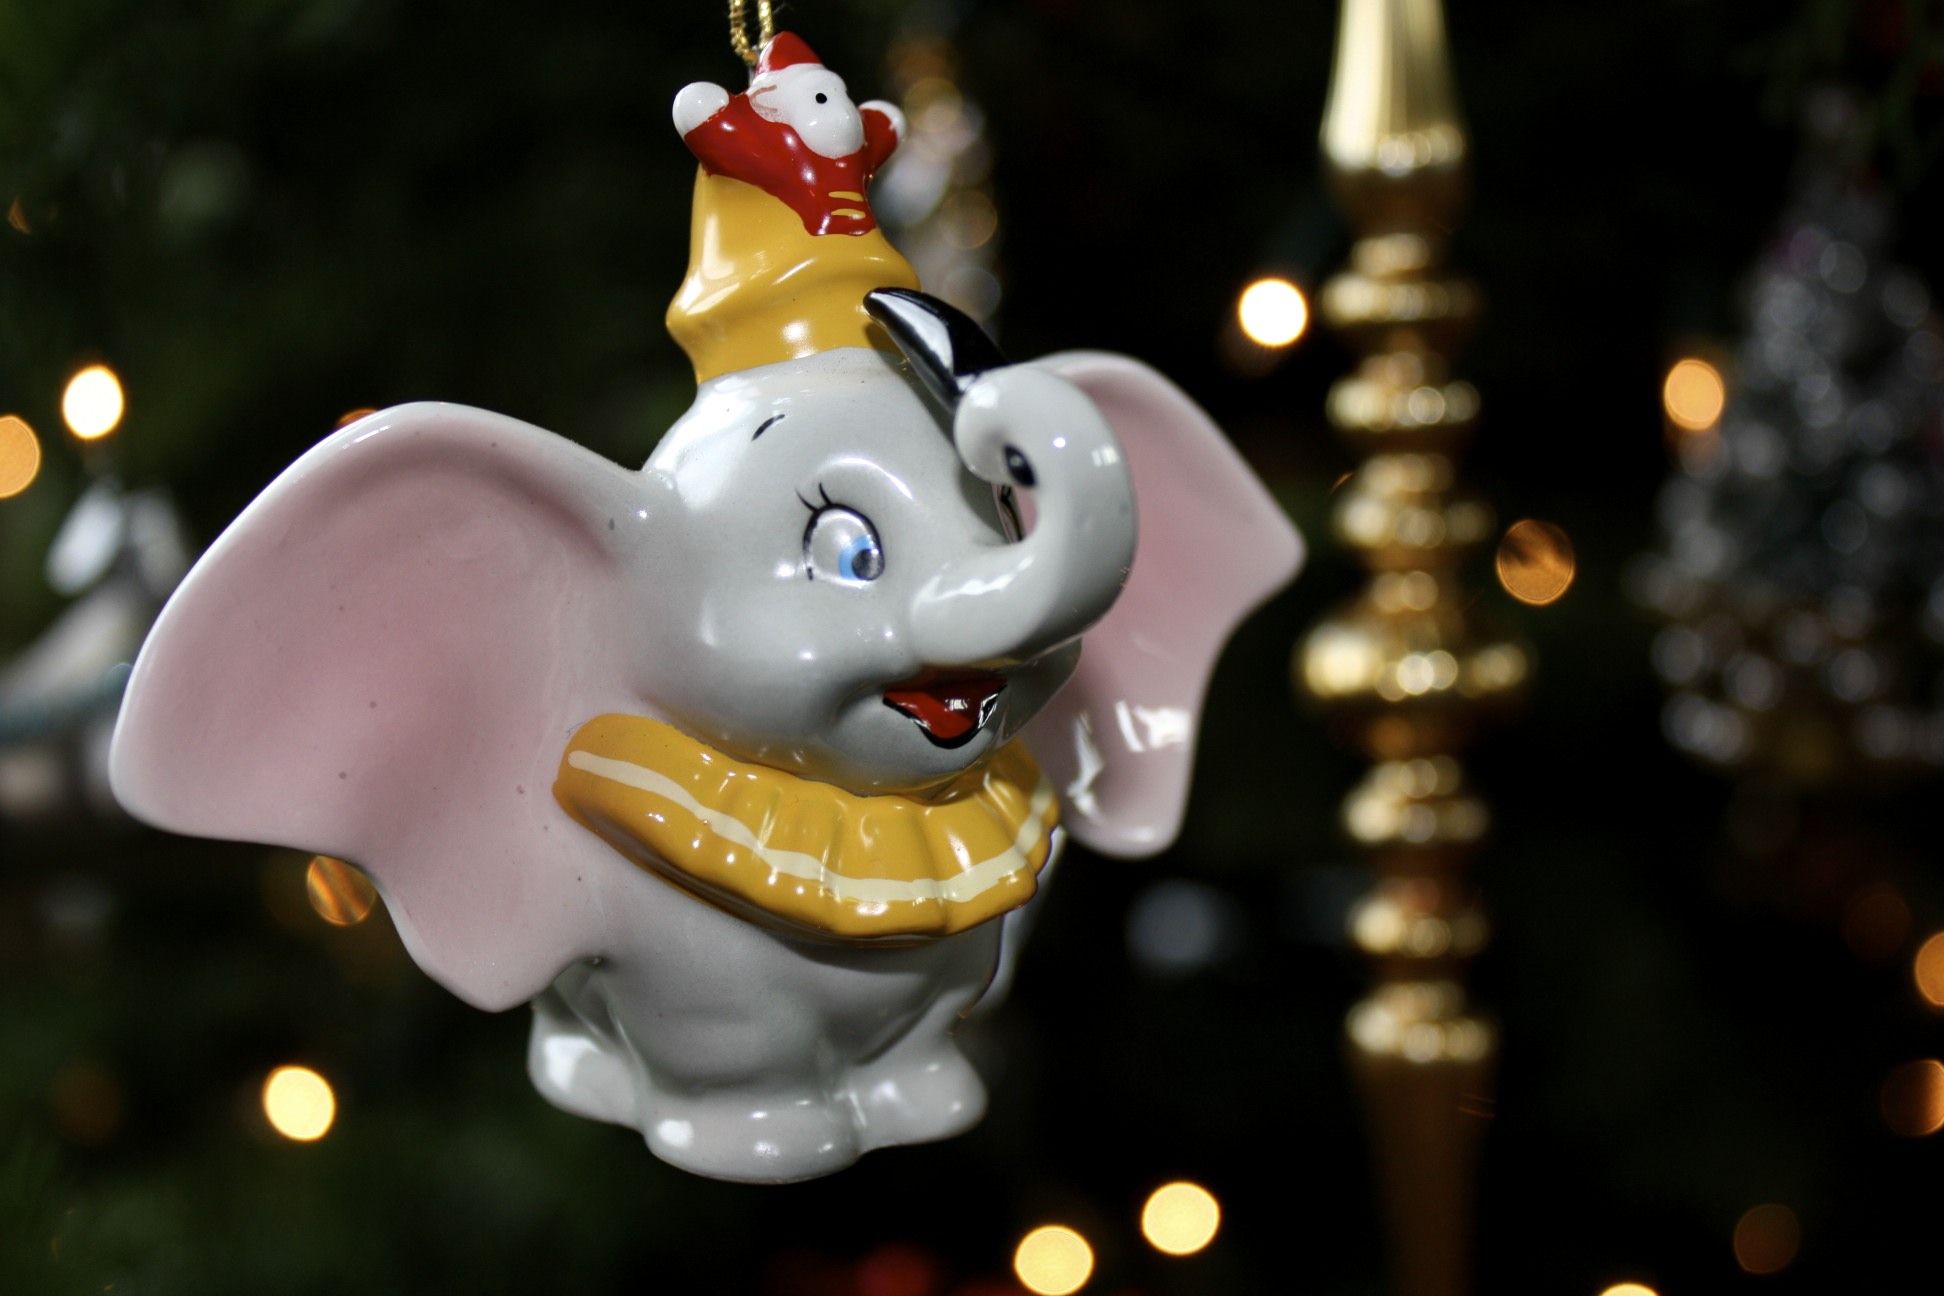 Dumbo Ornament